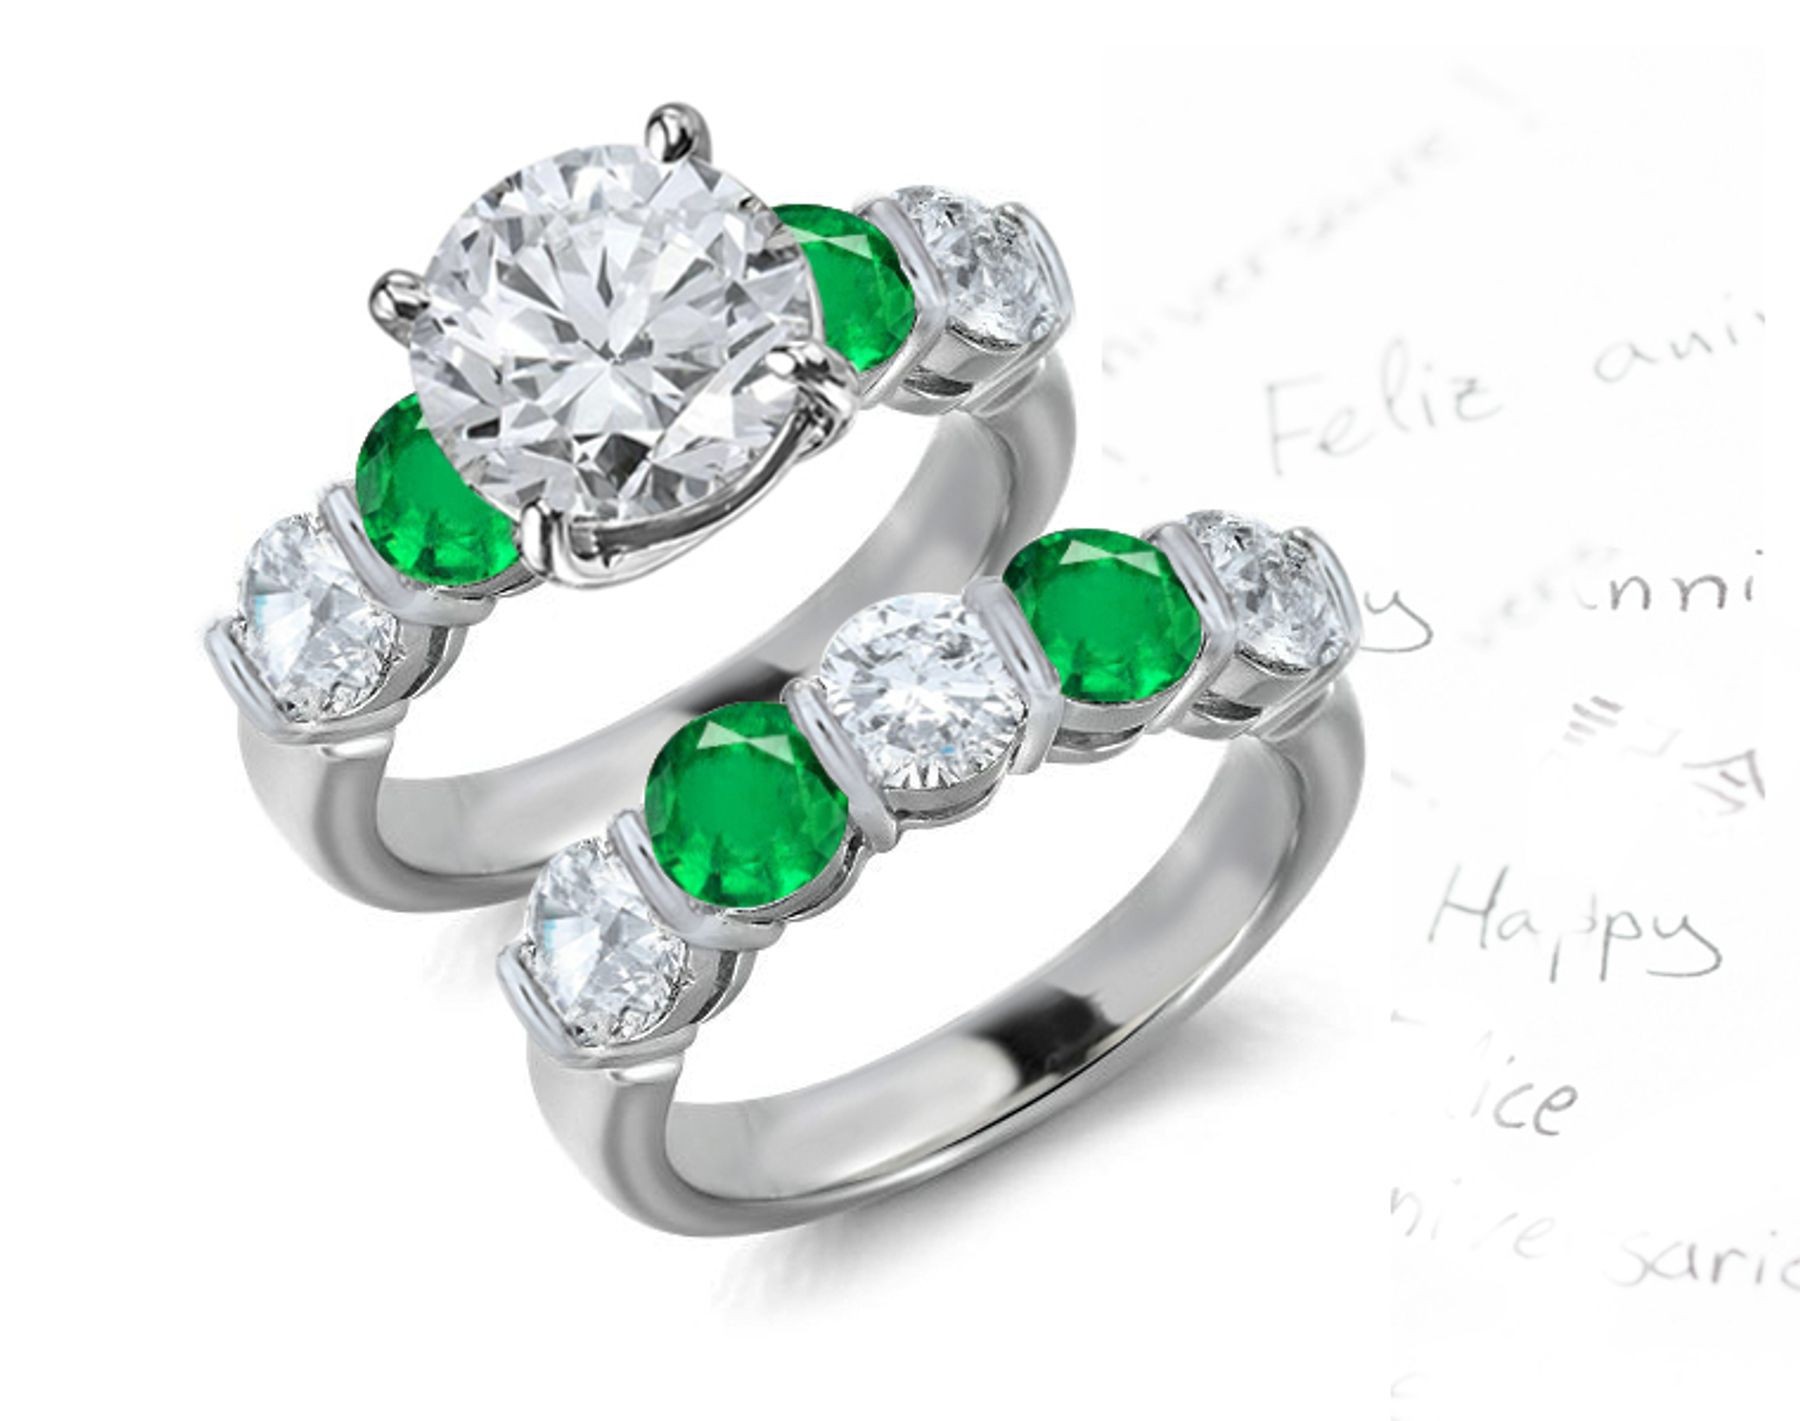 True Emerald & Genuine Diamonds: This 5 Stone nniversary Ring with Emeralds and Diamonds 